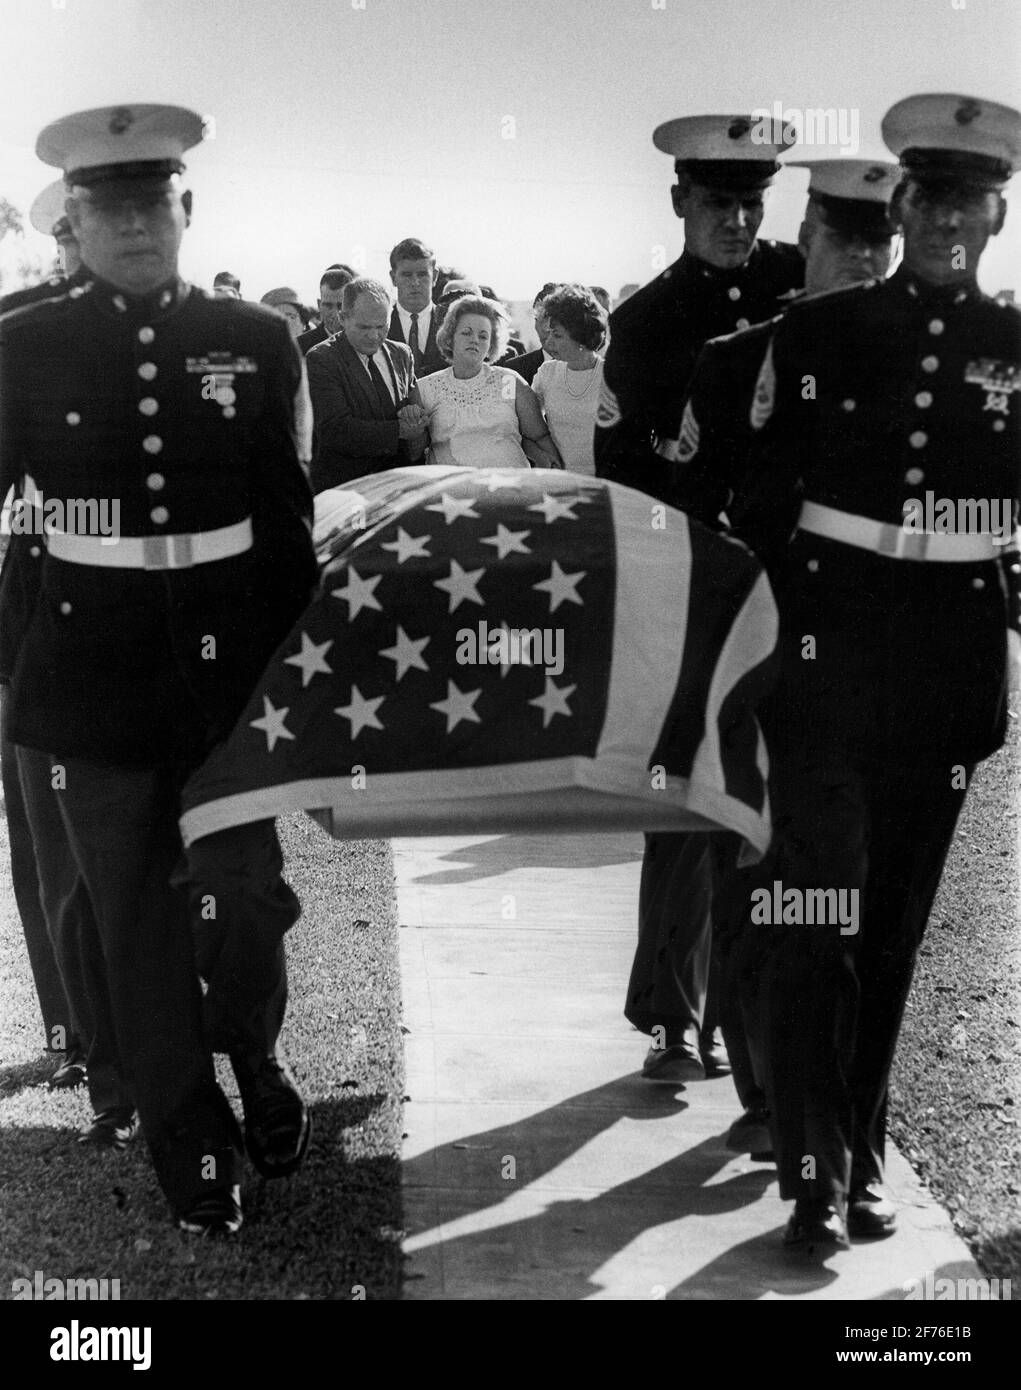 Femme enceinte et famille d'un soldat du Vietnam tué en action, suit son cercueil lors d'une cérémonie d'enterrement militaire dans le sud de la Floride, CA 1960. Banque D'Images